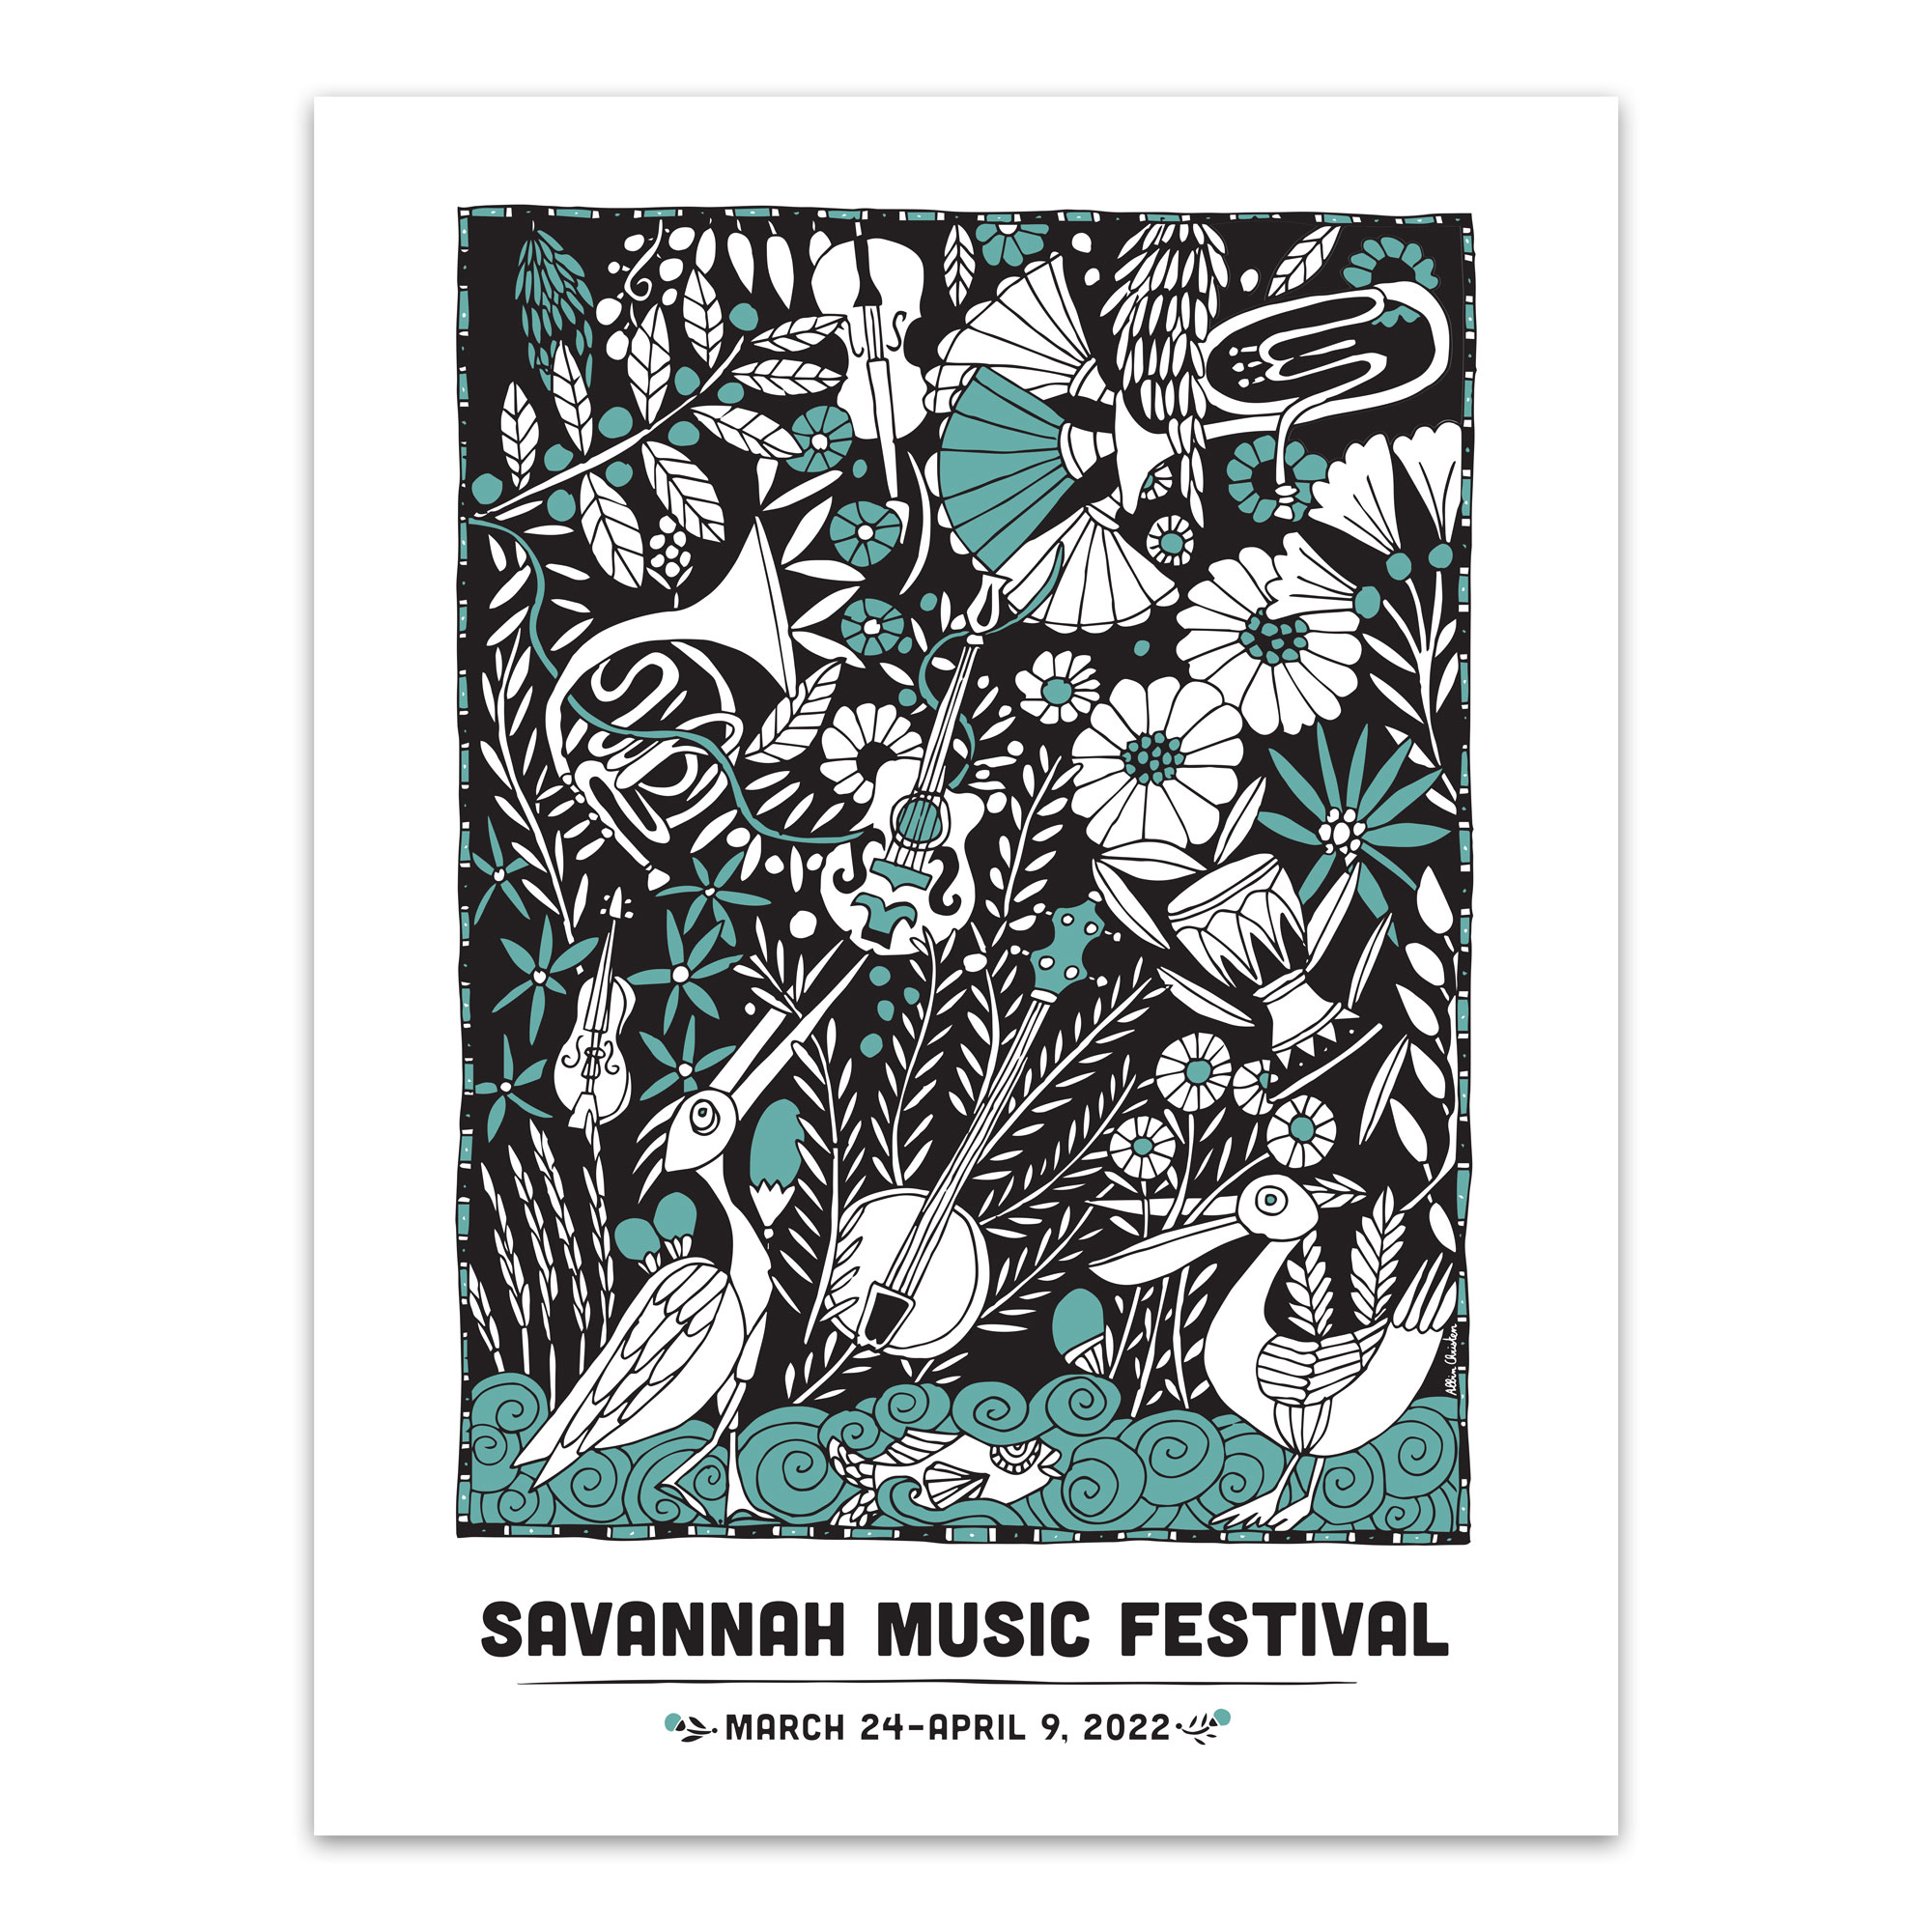 2022 Festival Poster by Albin Christen - Savannah Music Festival